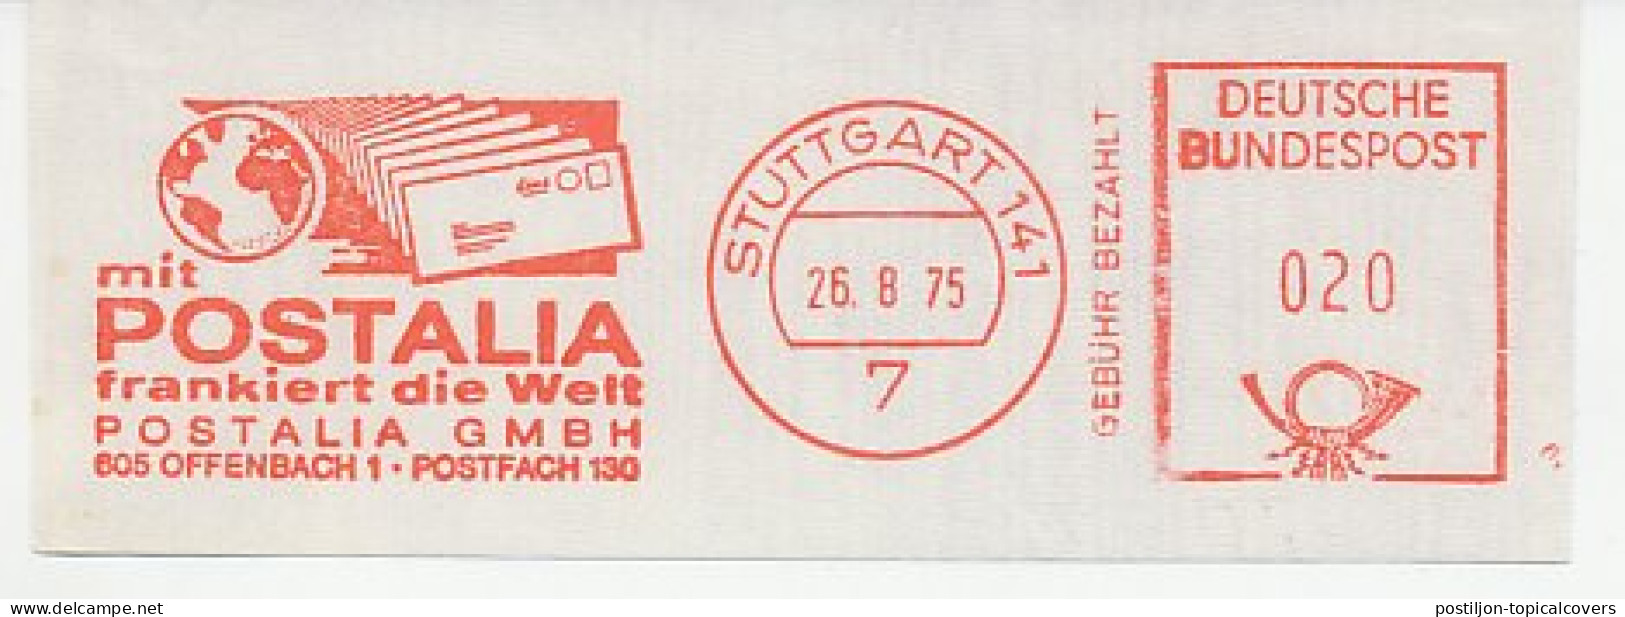 Meter Cut Germany 1975 Postalia  - Automatenmarken [ATM]